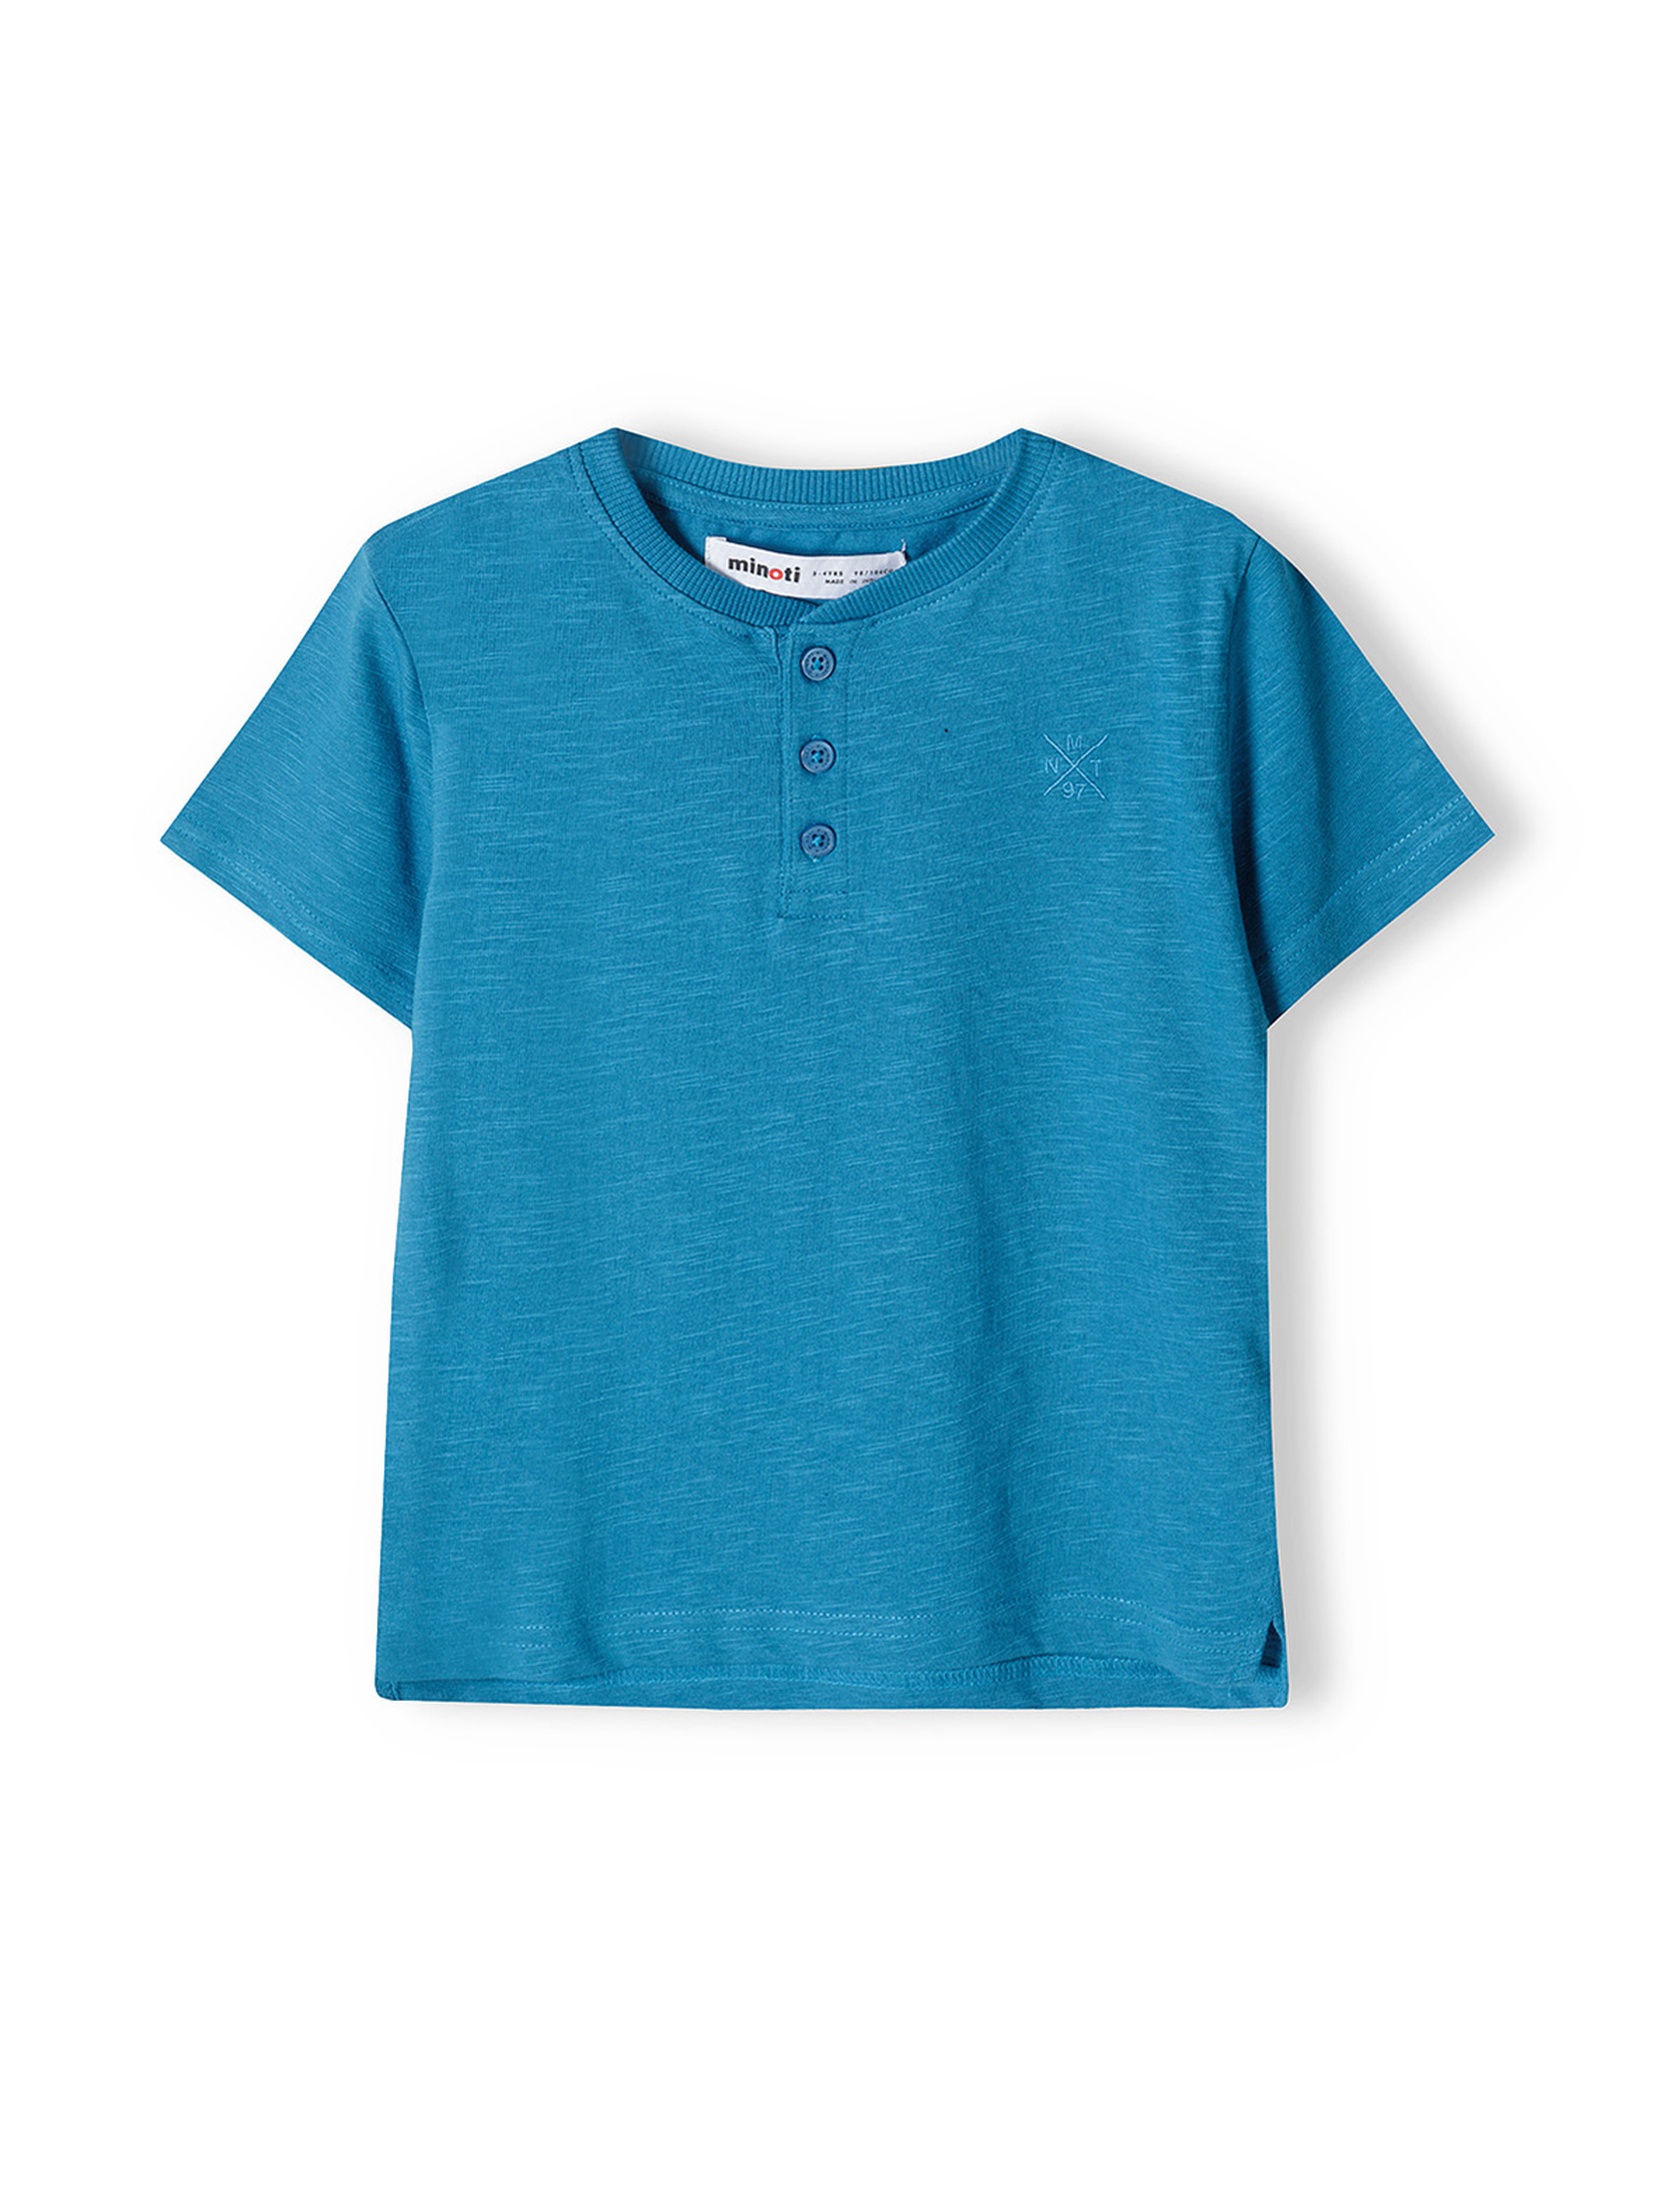 Niebieska koszulka bawełniana chłopięca z ozdobnymi guzikami